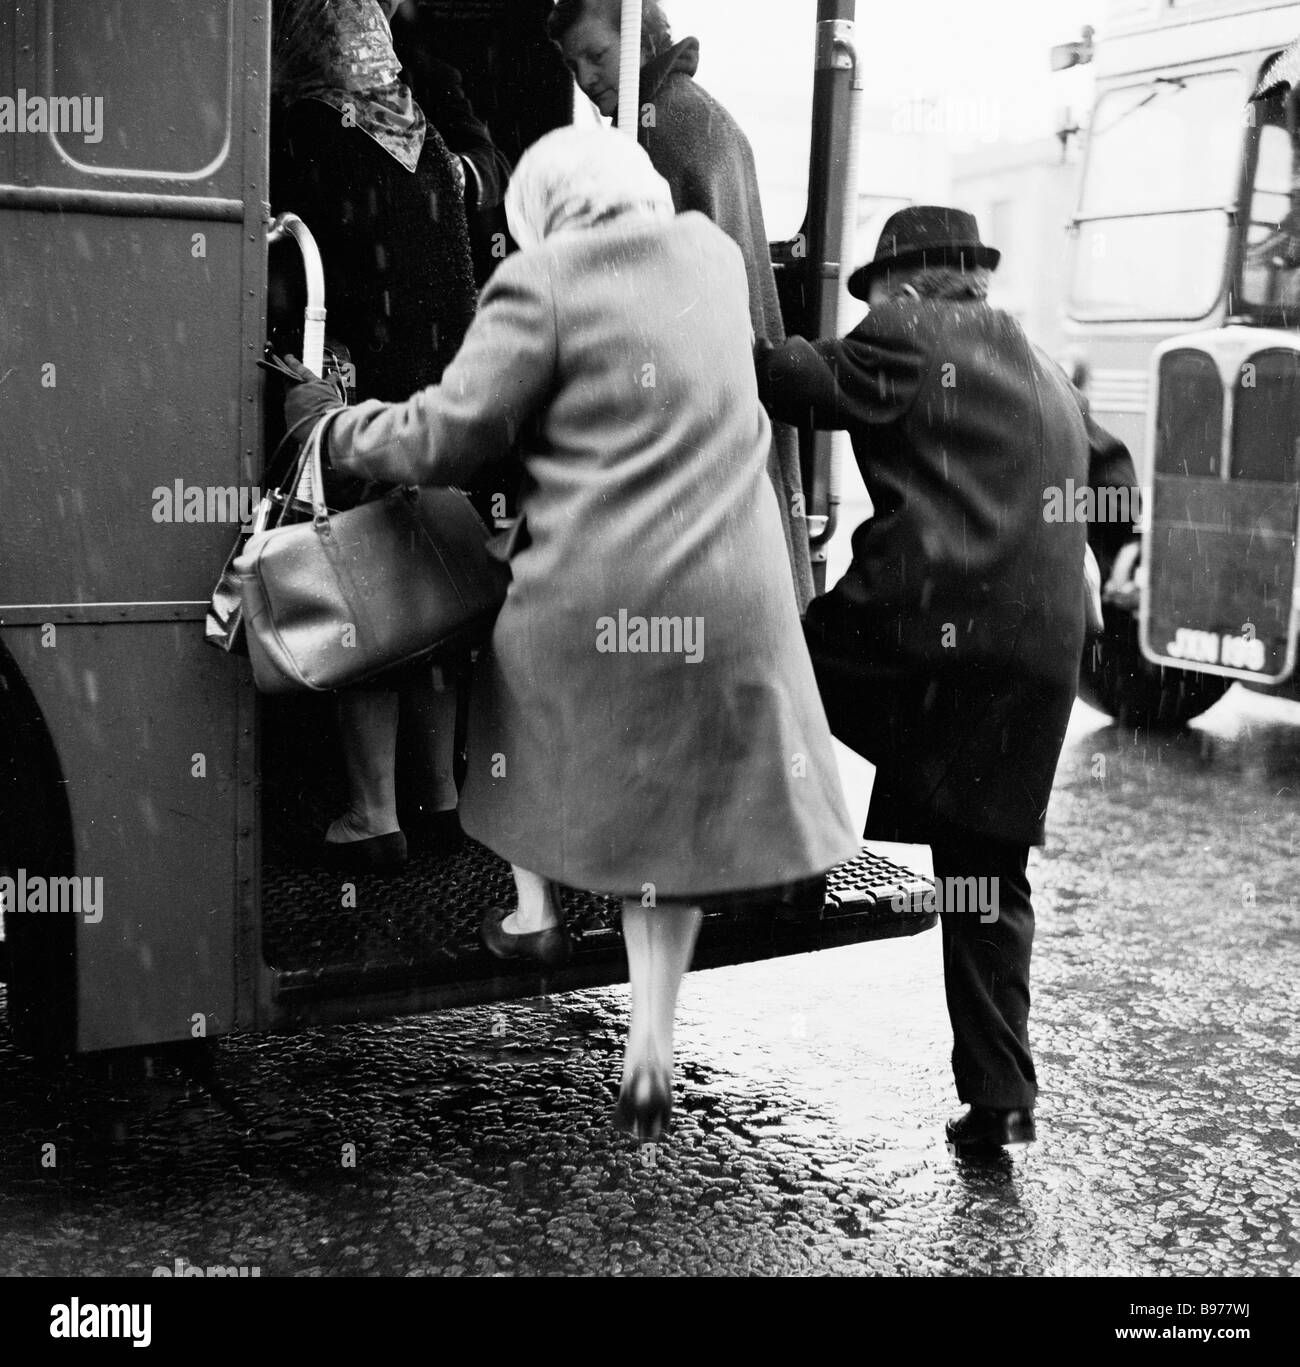 1950s, periodo invernale, un uomo e una donna anziani afferra i corrimano e salgono sulla piattaforma posteriore aperta di un autobus a due piani, Londra, Inghilterra, Regno Unito. Foto Stock